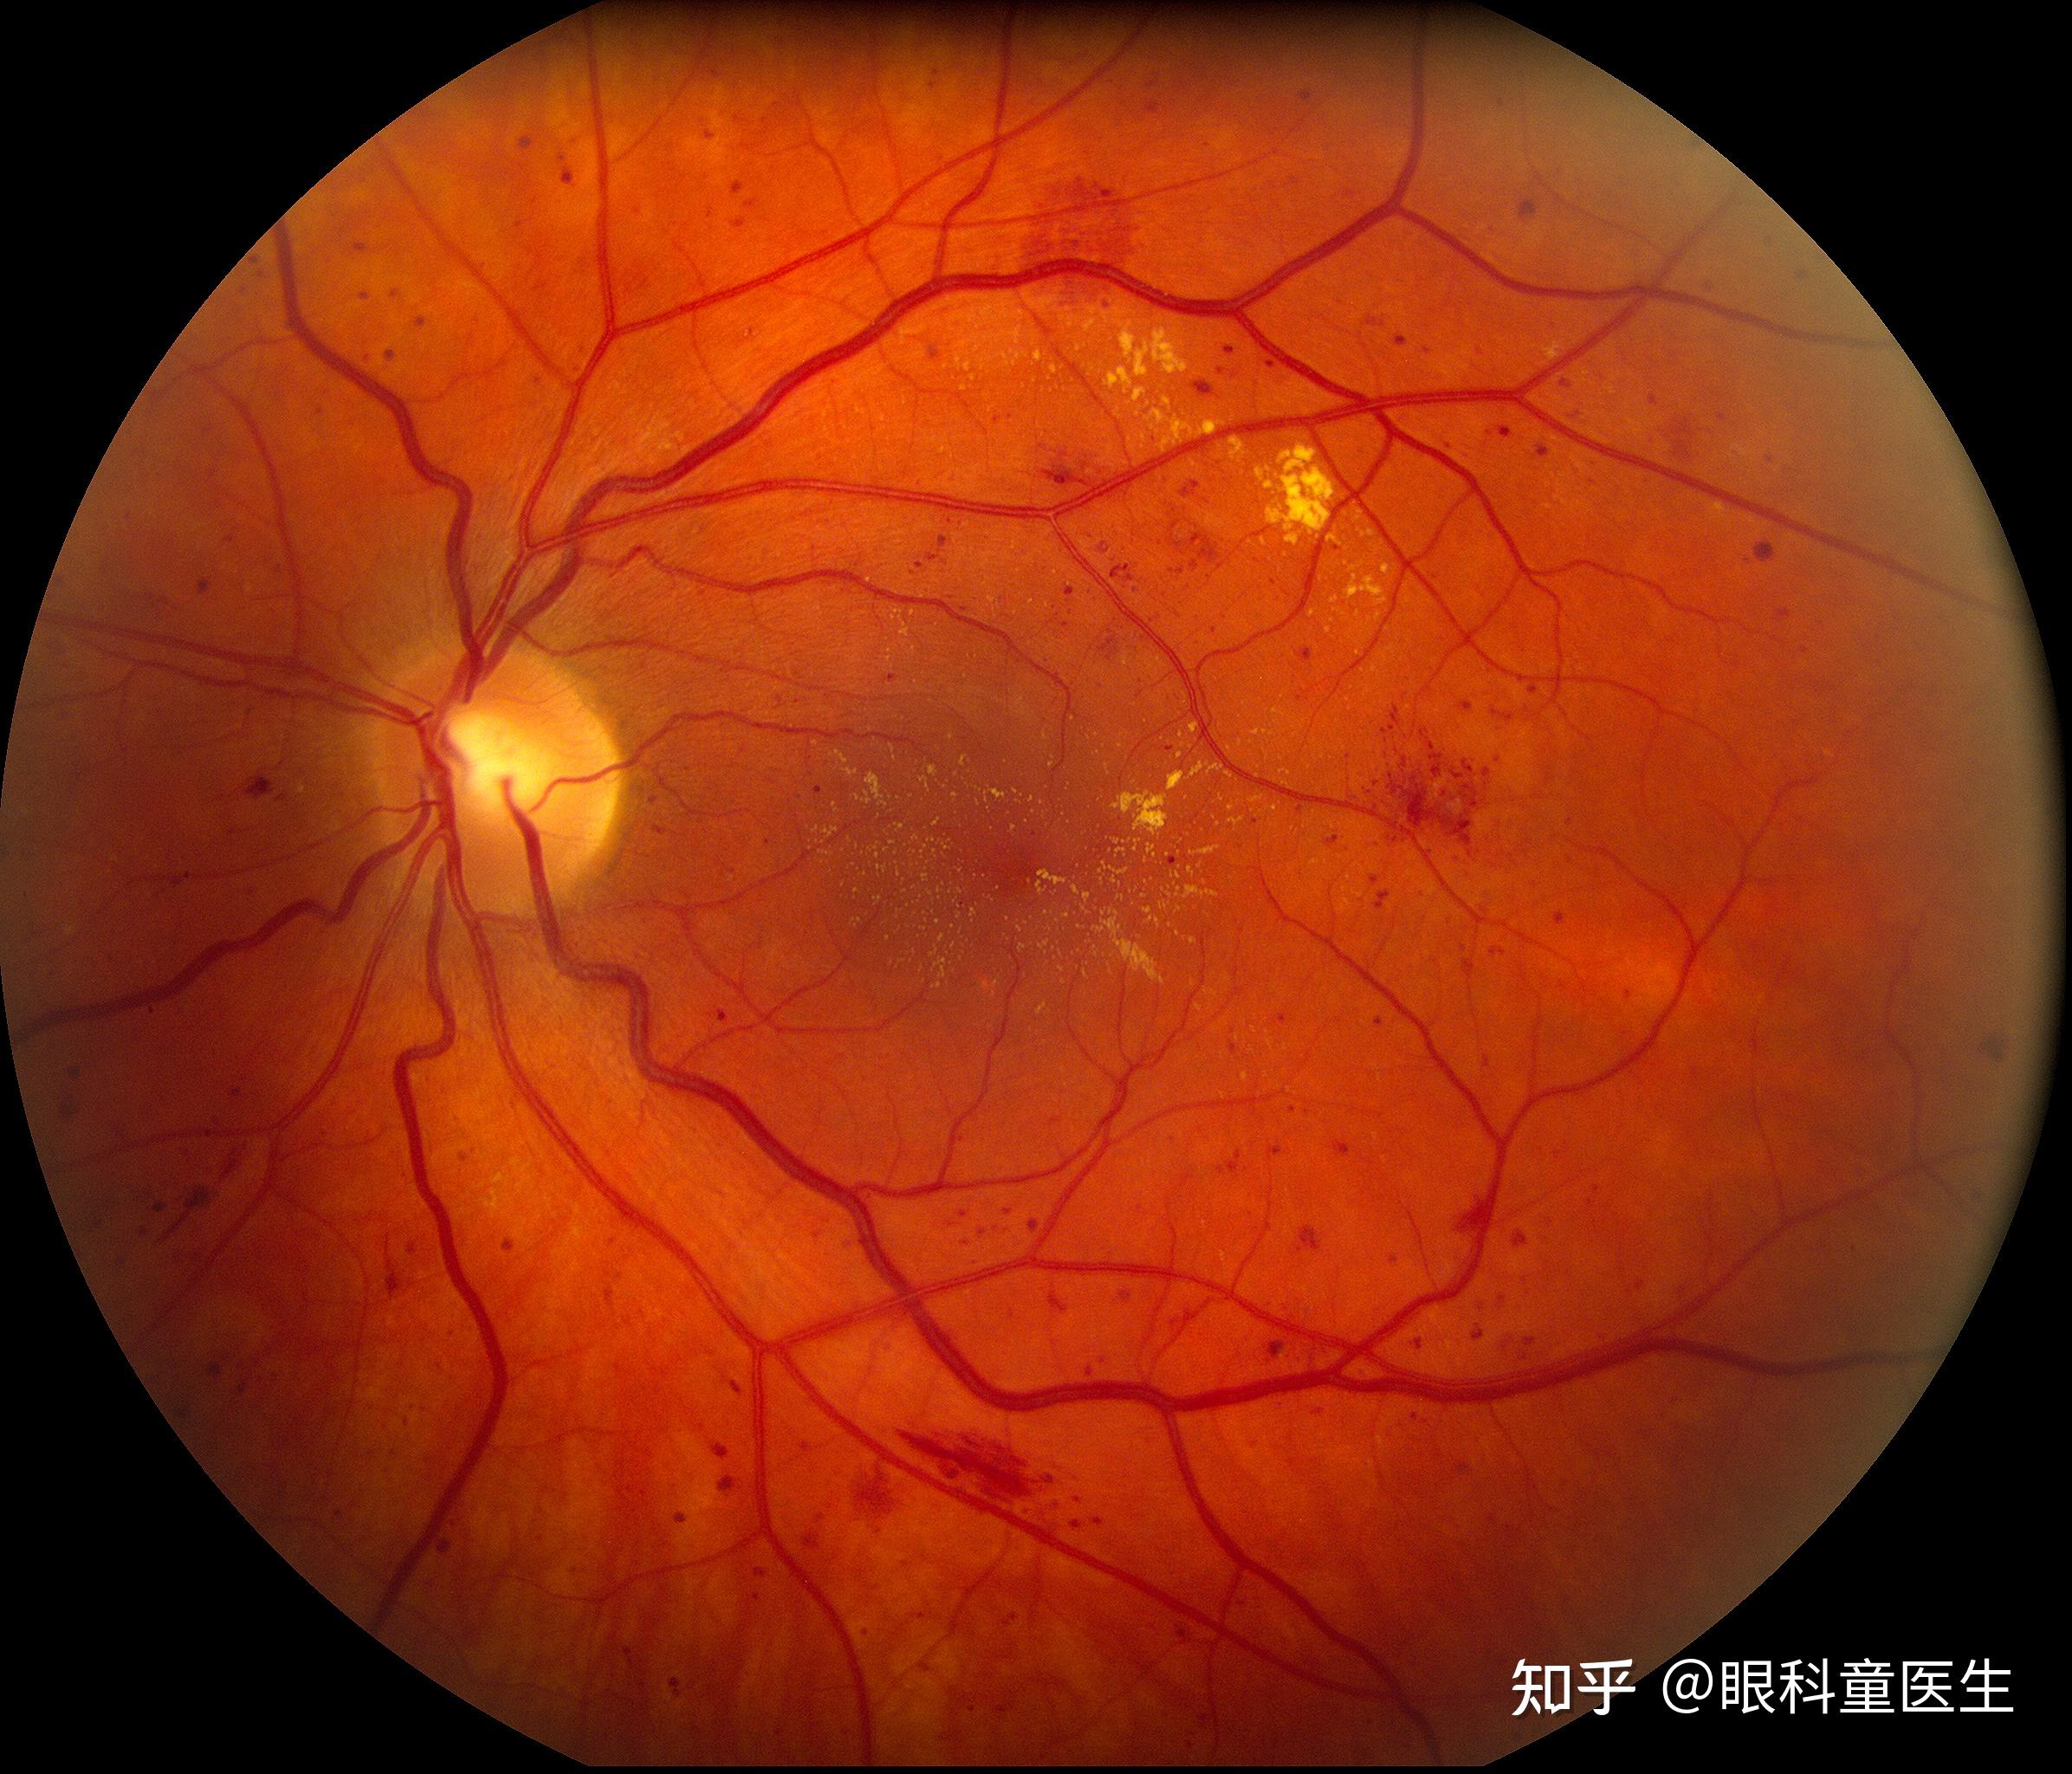 糖尿病性视网膜病变(dr)